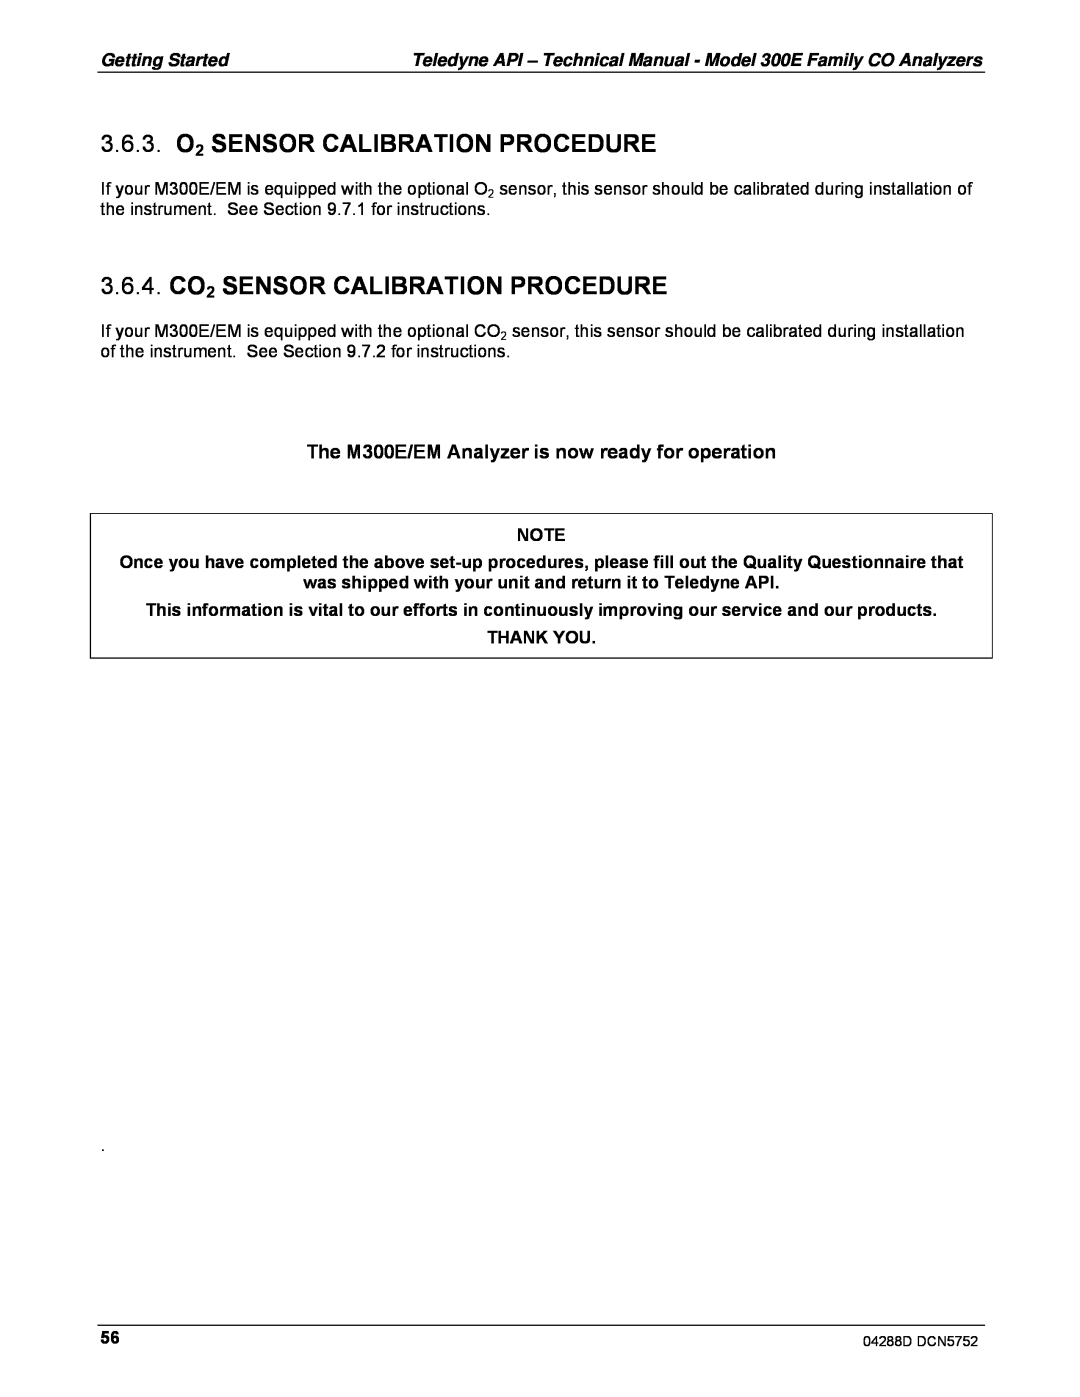 Teledyne M300EM operation manual 3.6.3.O2 SENSOR CALIBRATION PROCEDURE, 3.6.4.CO2 SENSOR CALIBRATION PROCEDURE, Thank You 